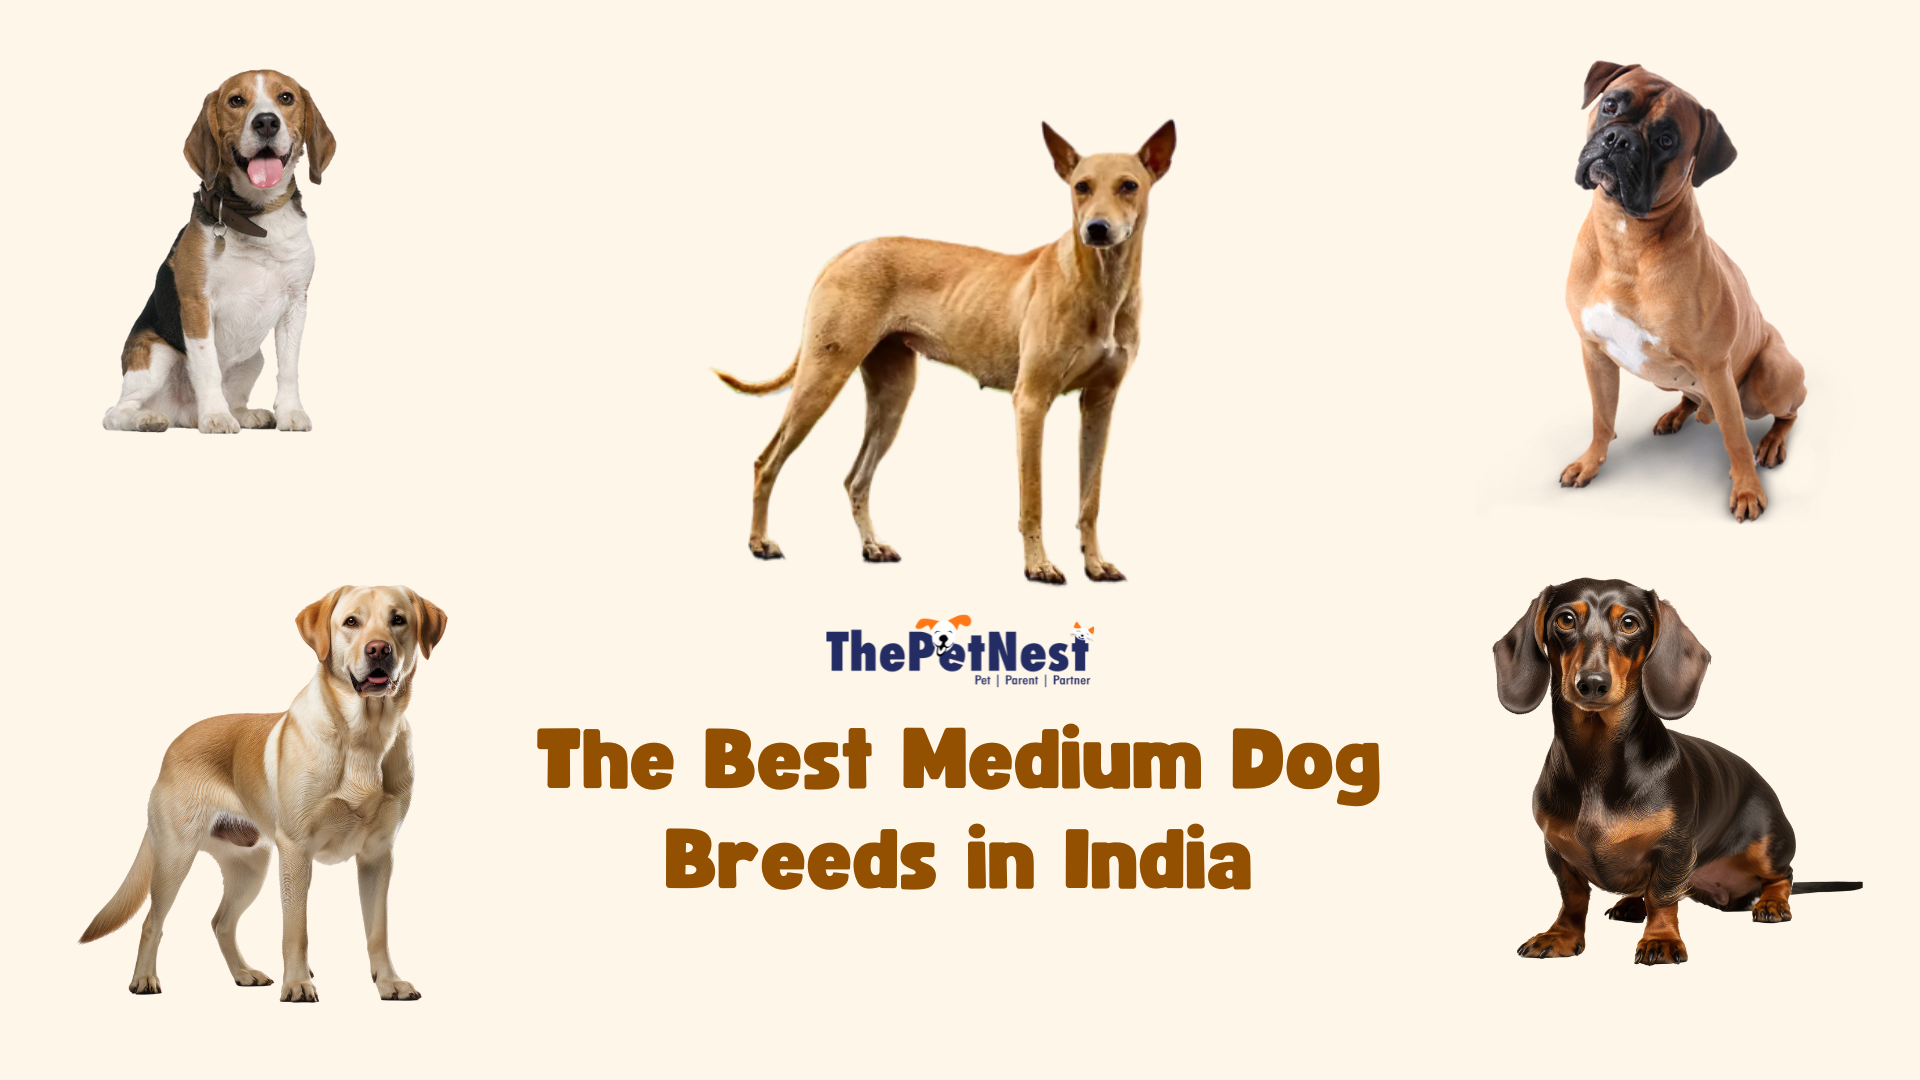 Top 5 Best Medium Dog Breeds in India